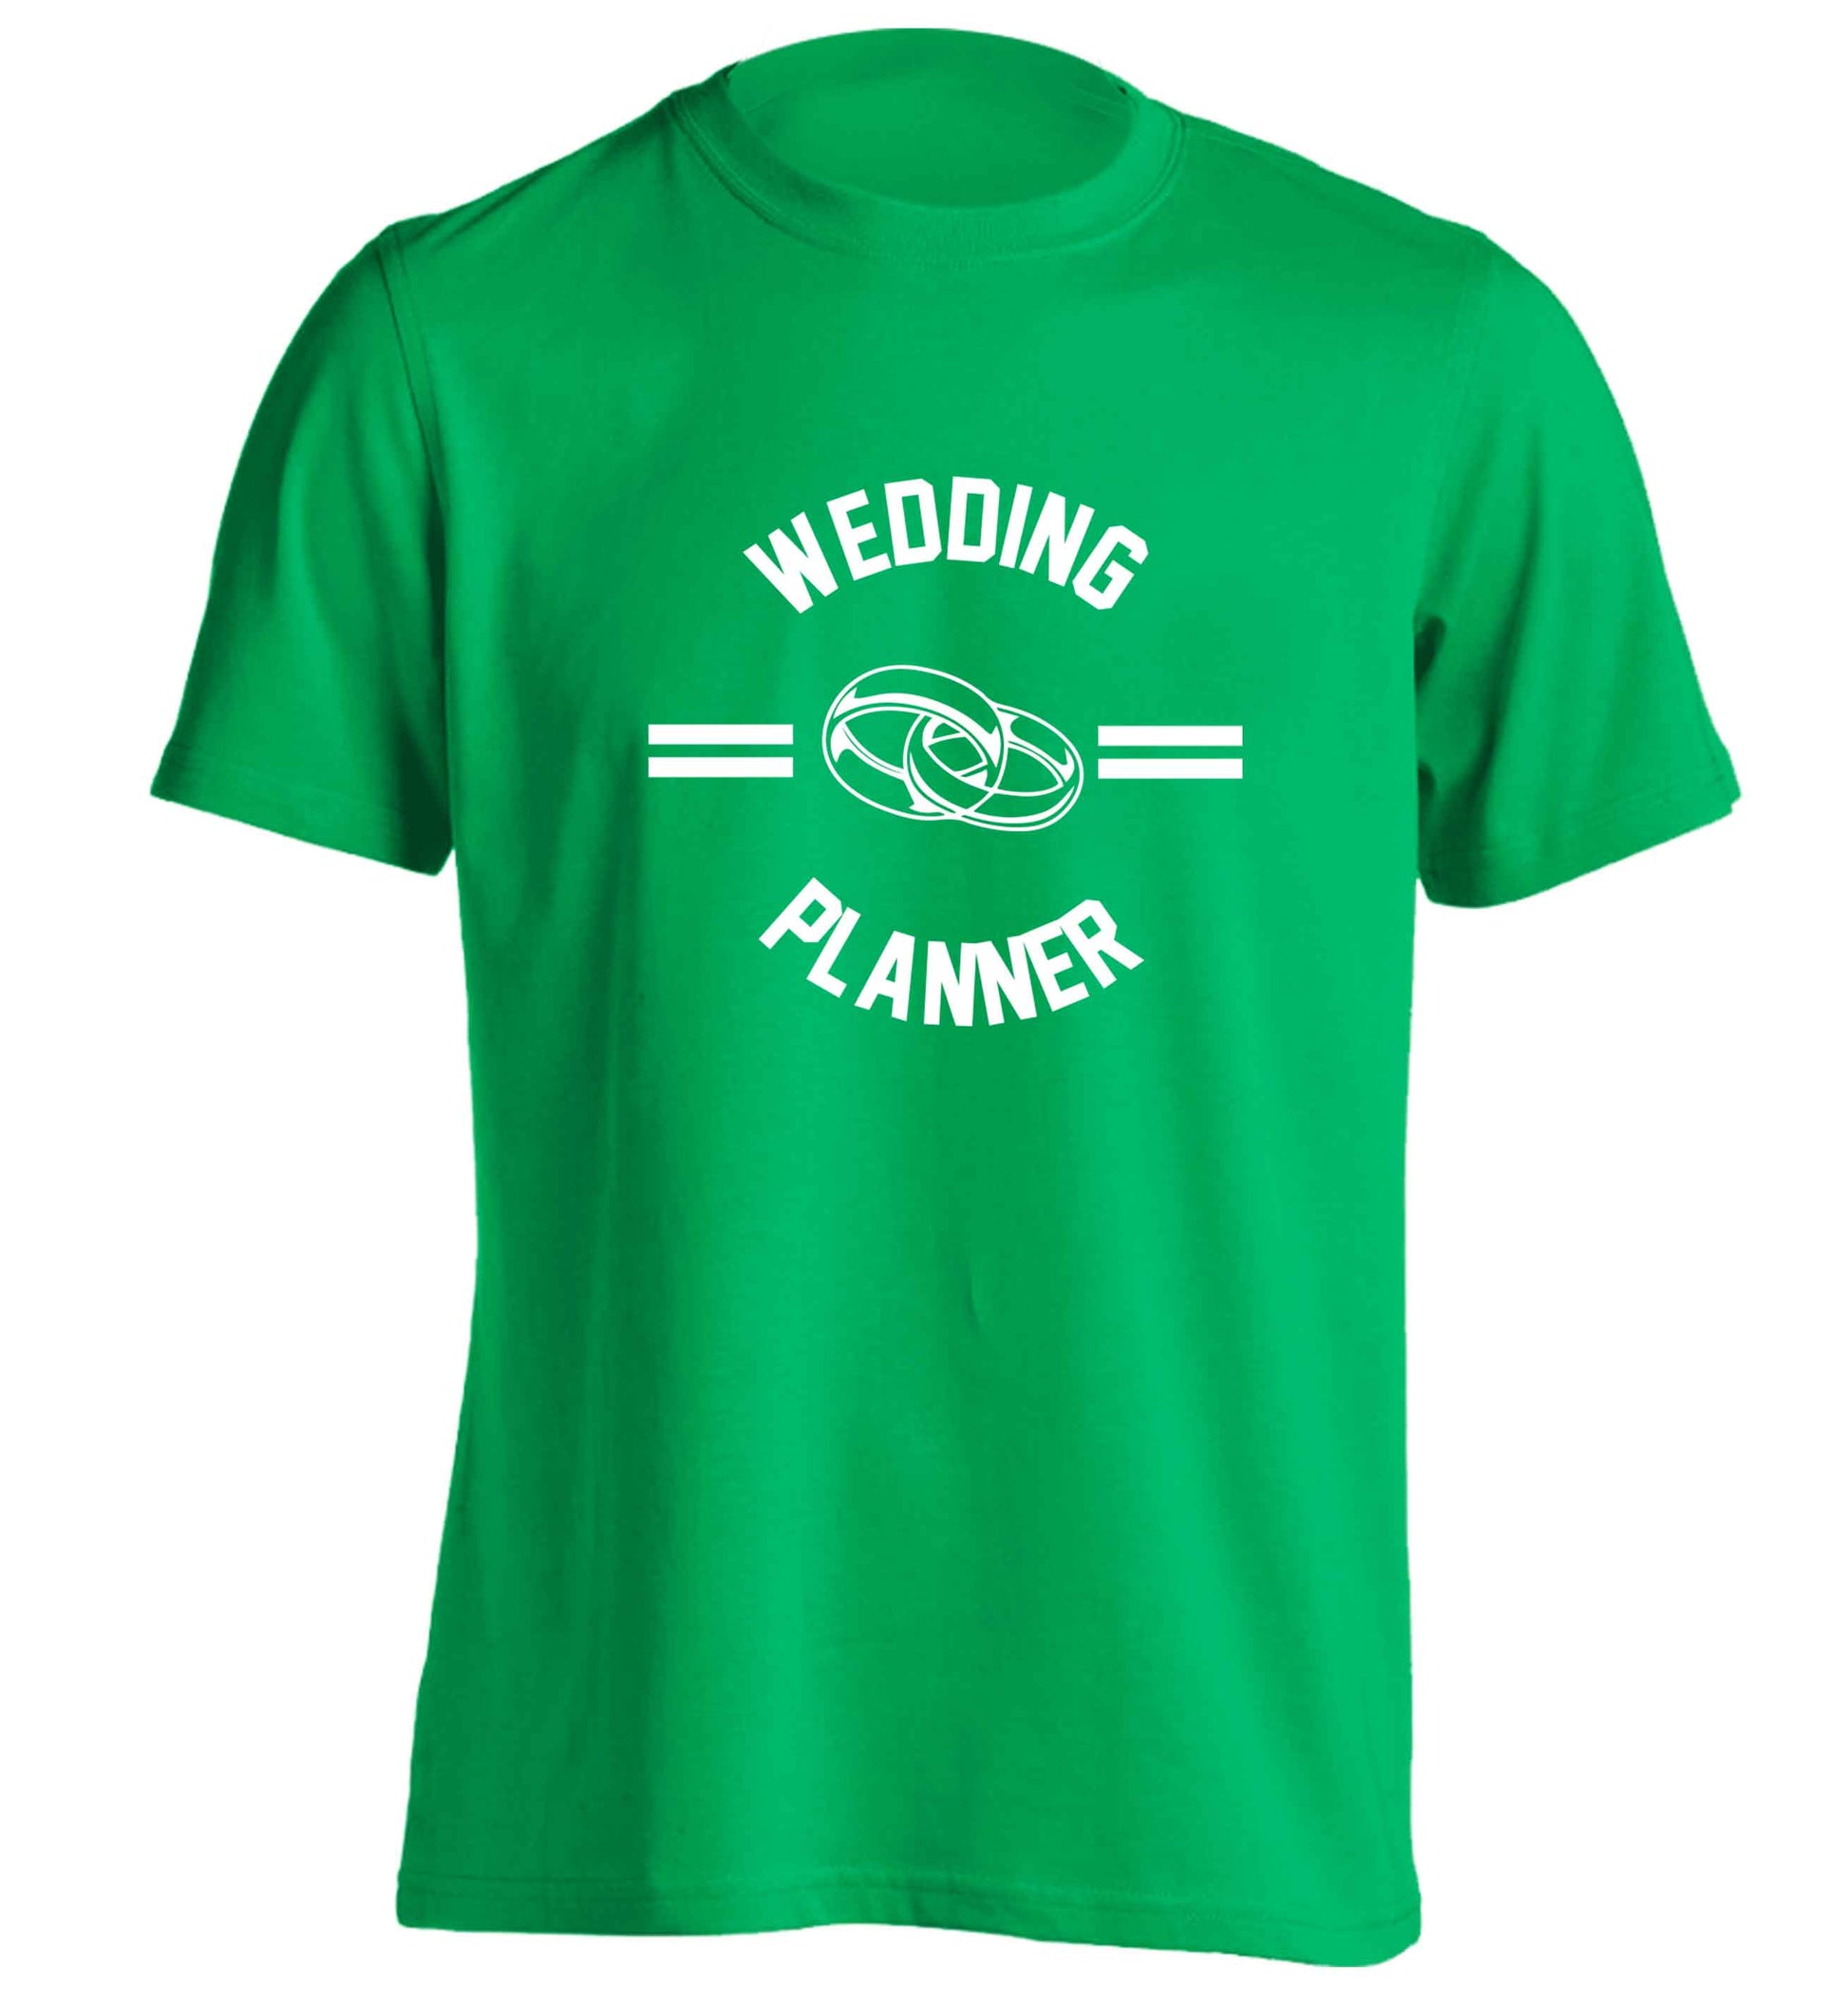 Wedding planner adults unisex green Tshirt 2XL